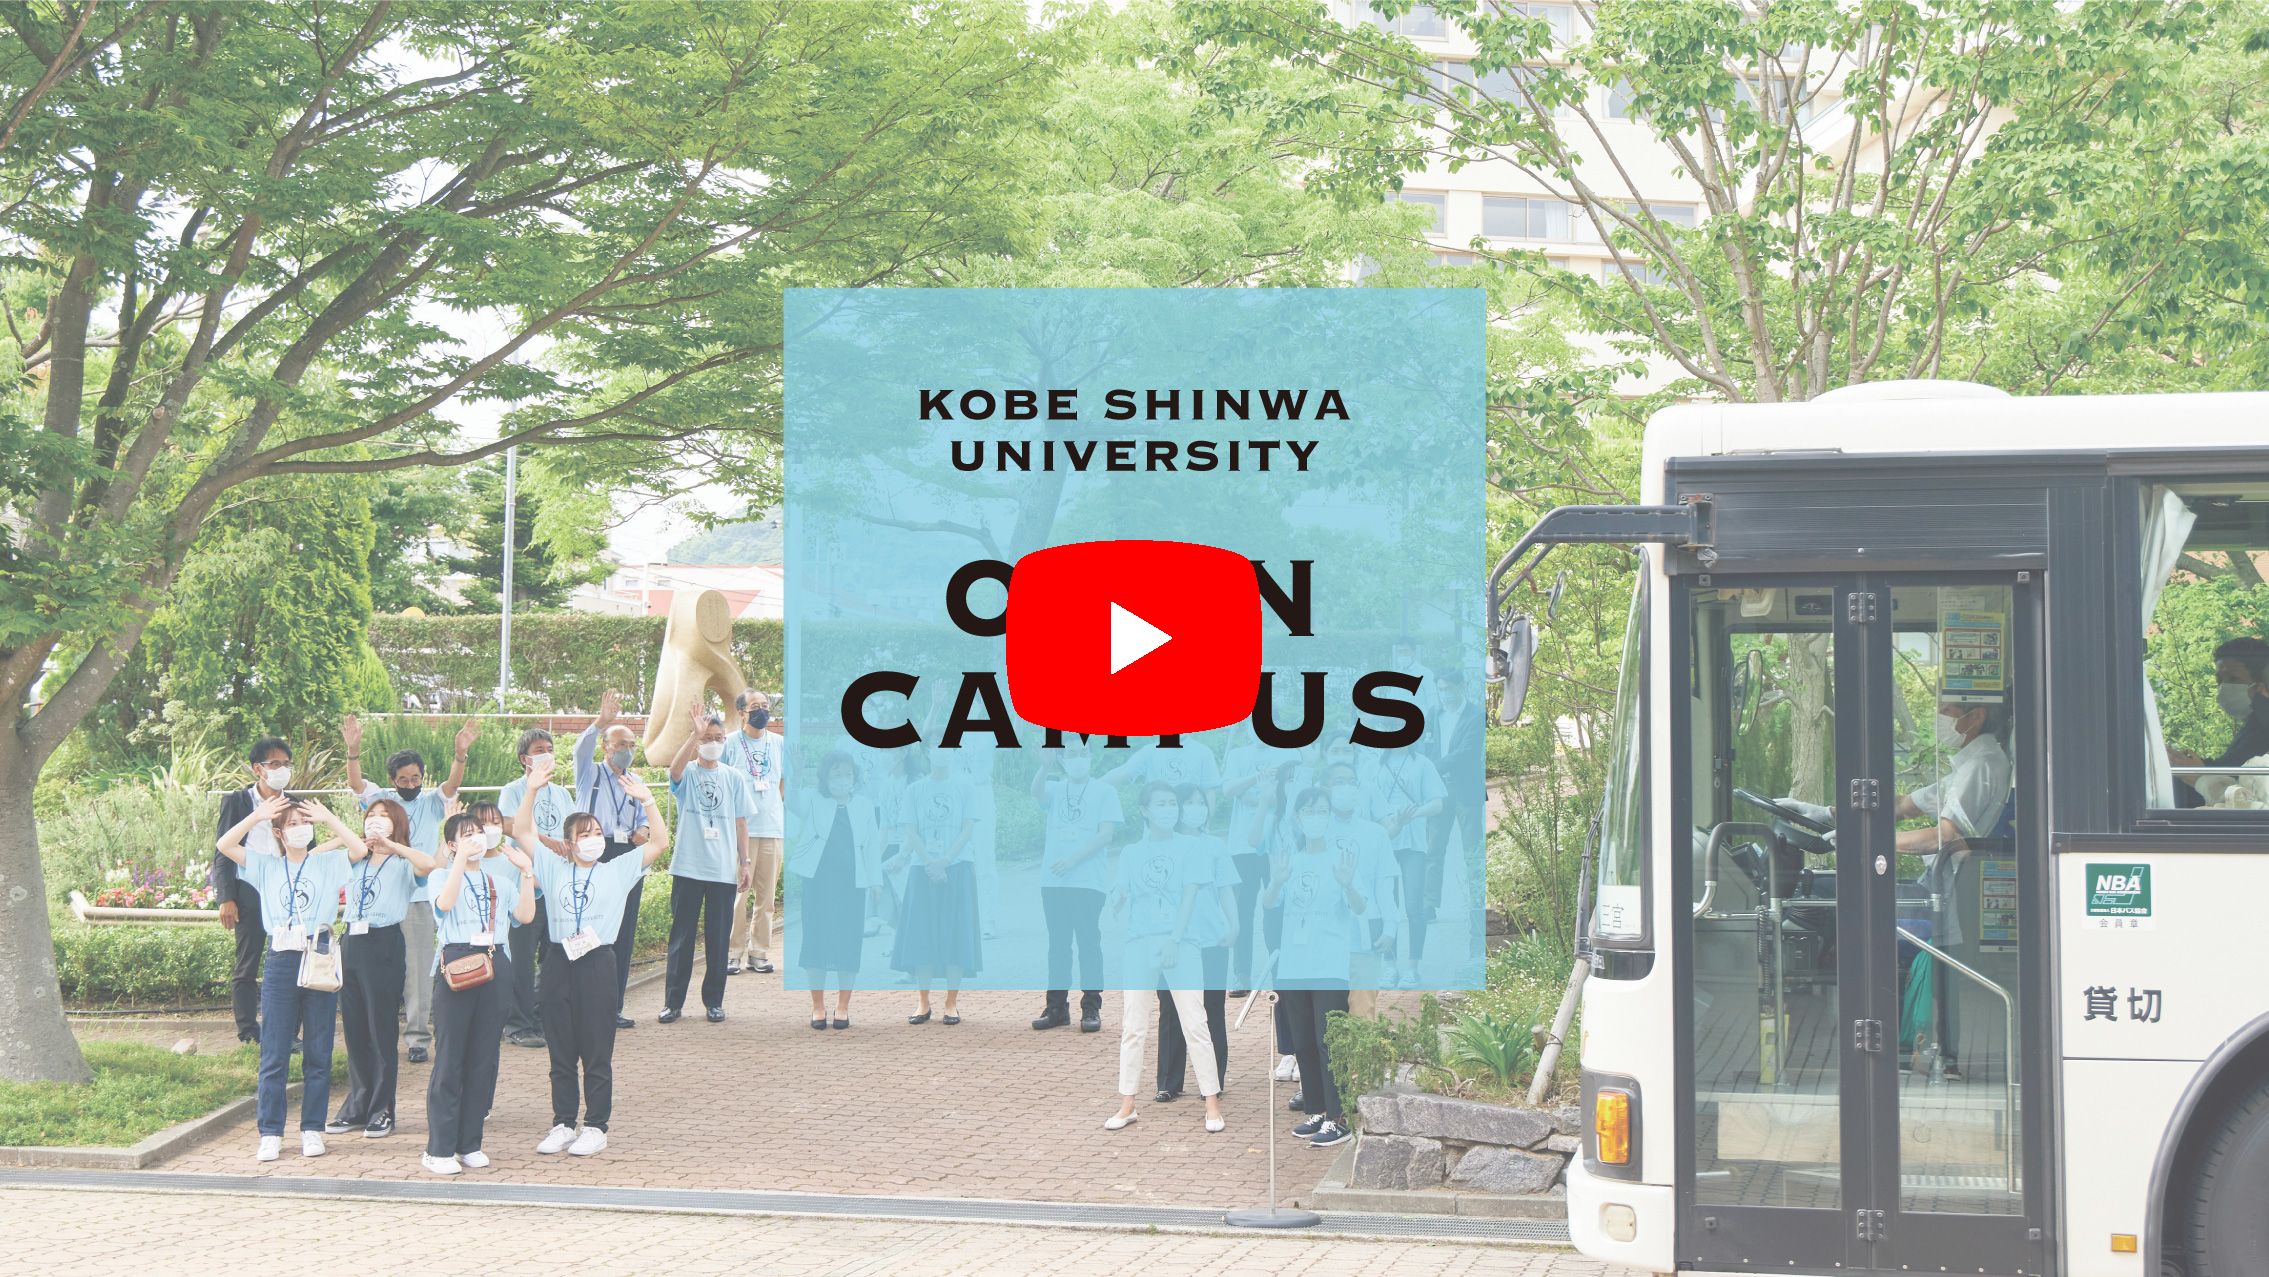 神戸親和大学PV「OPEN CAMPUS」を再生する